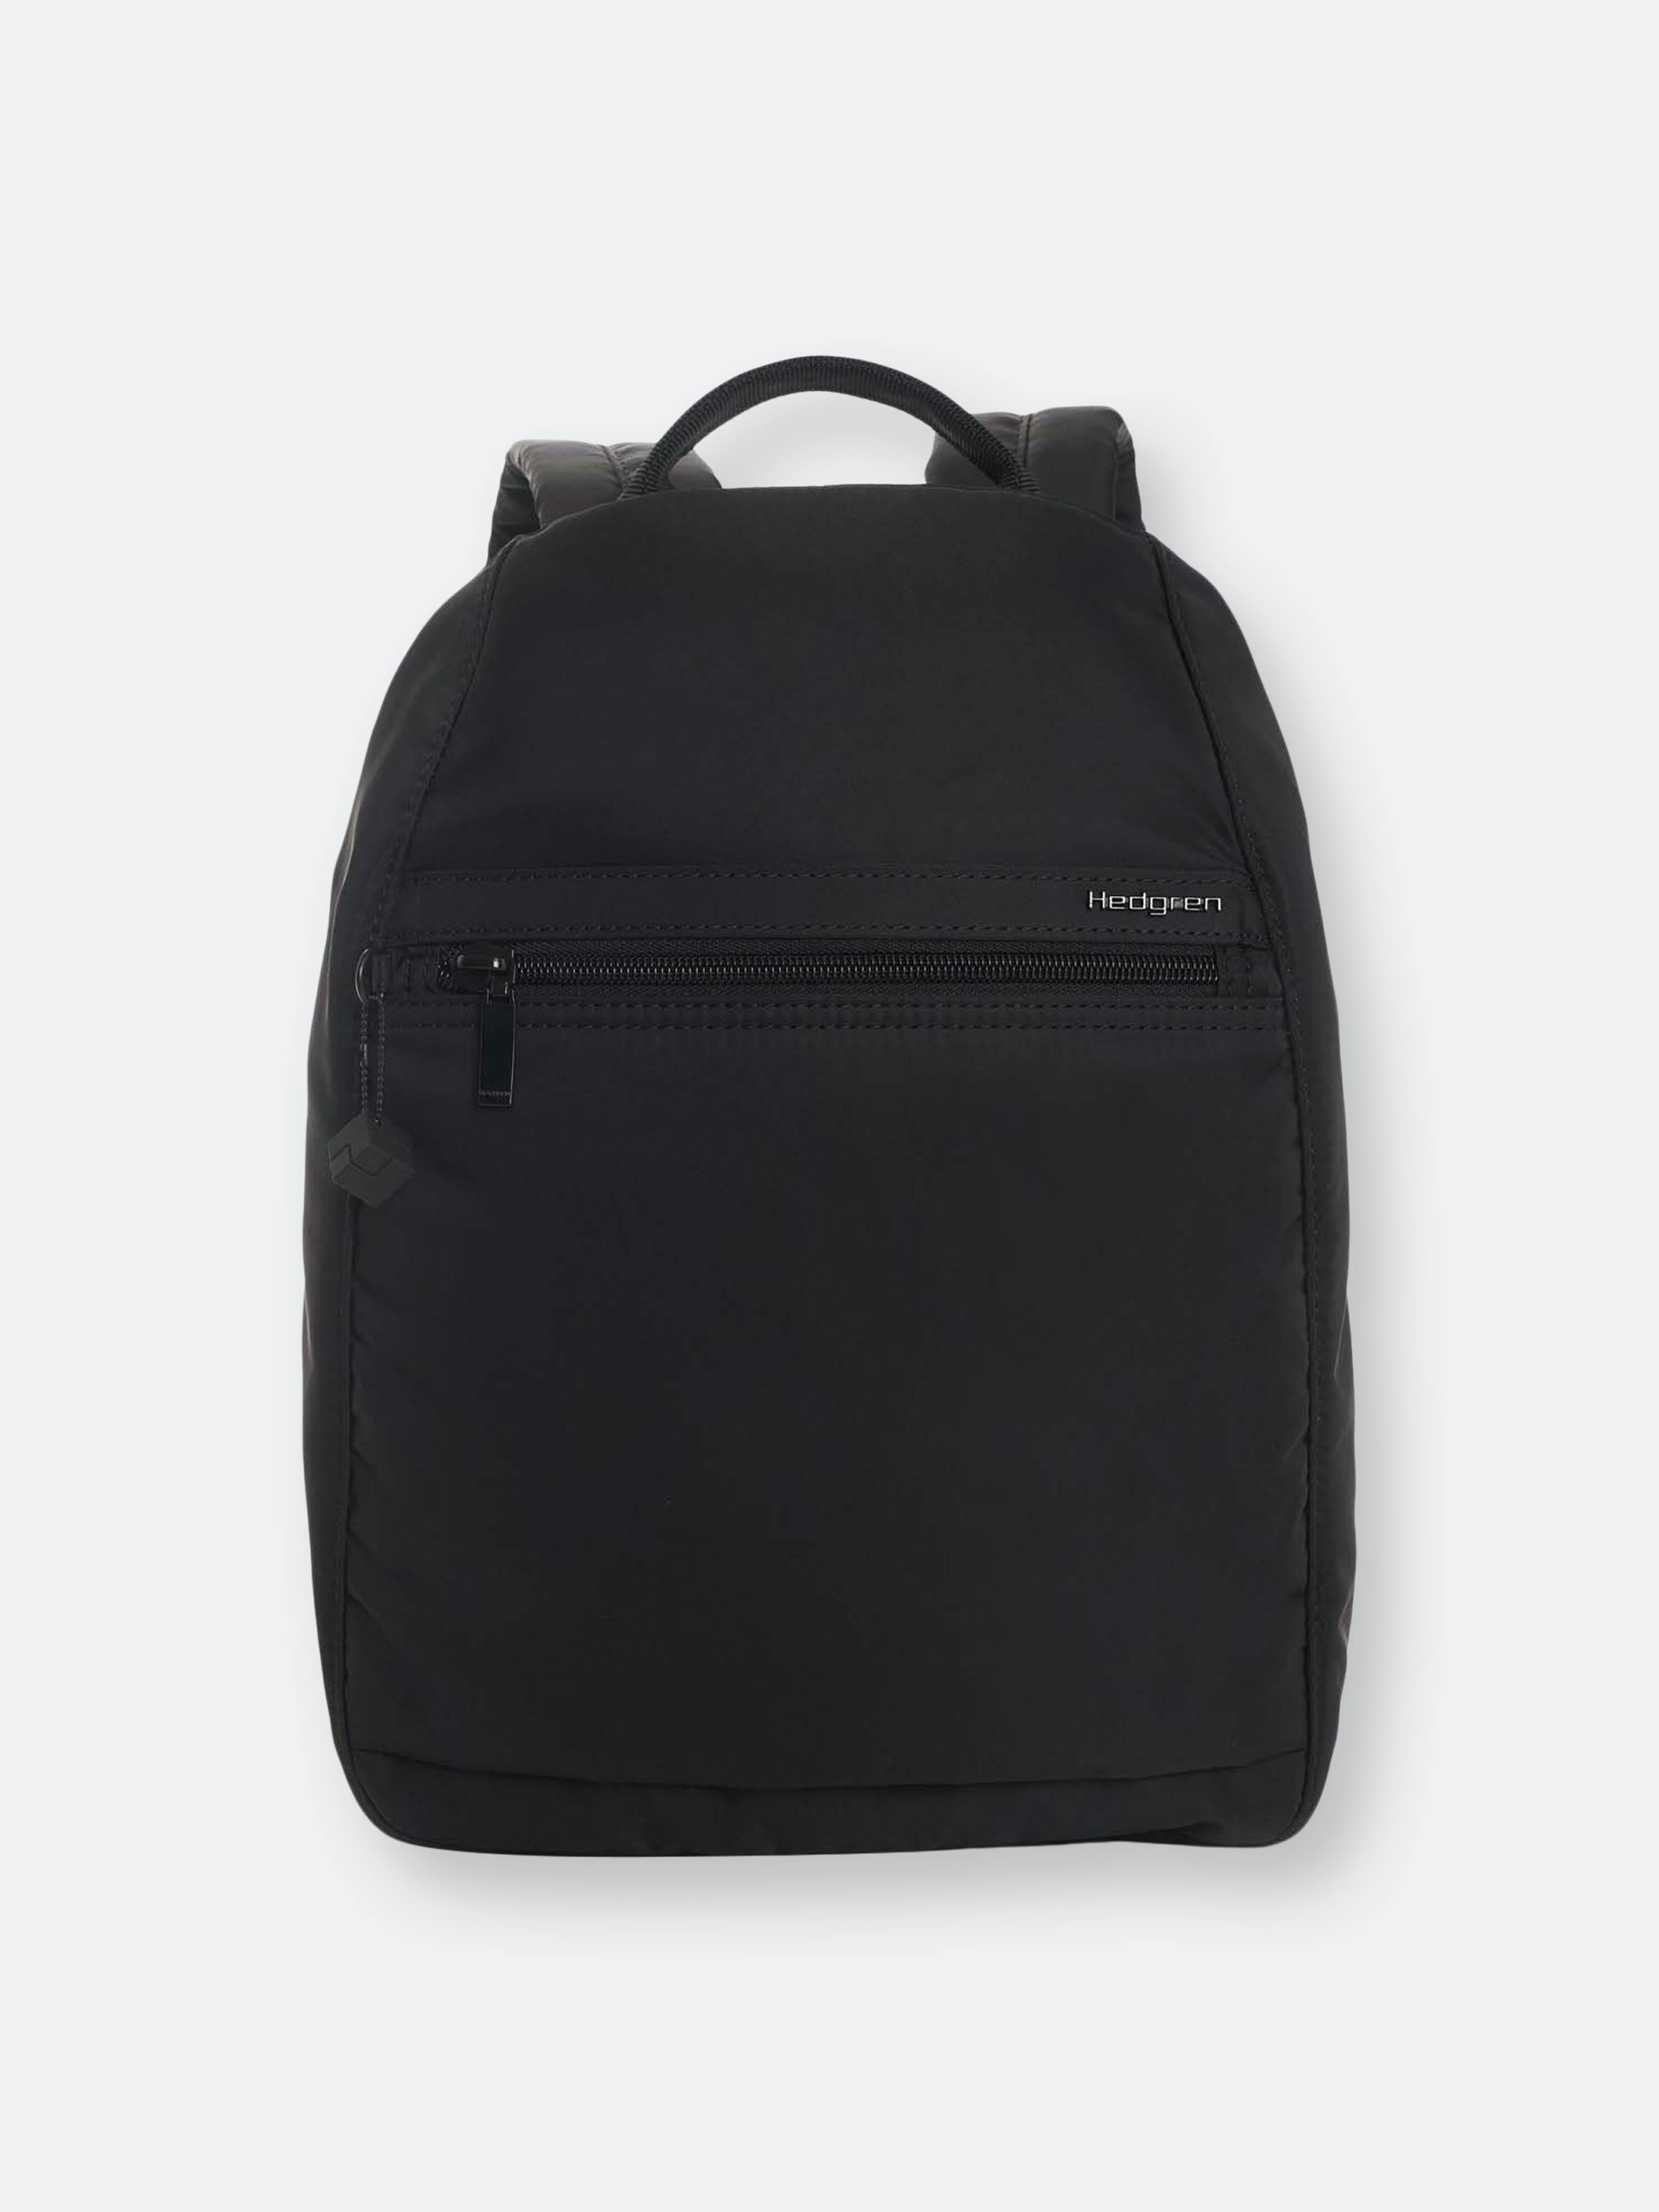 Hedgren Vogue Large RFID Backpack - Black - Zoomfigy